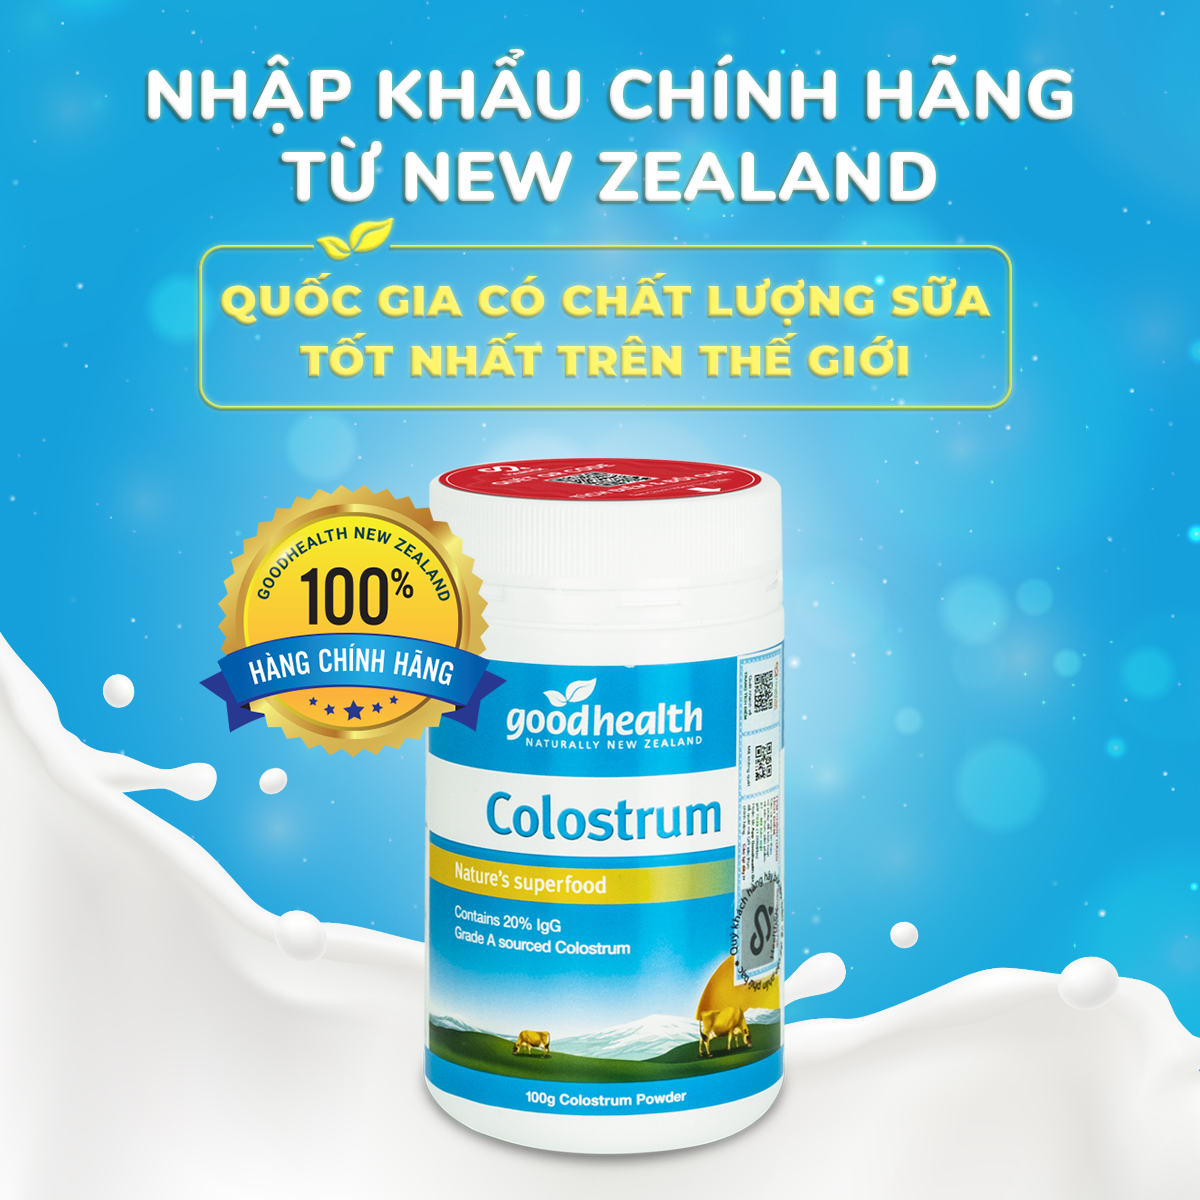 Sữa non Goodhealth Colostrum 100%